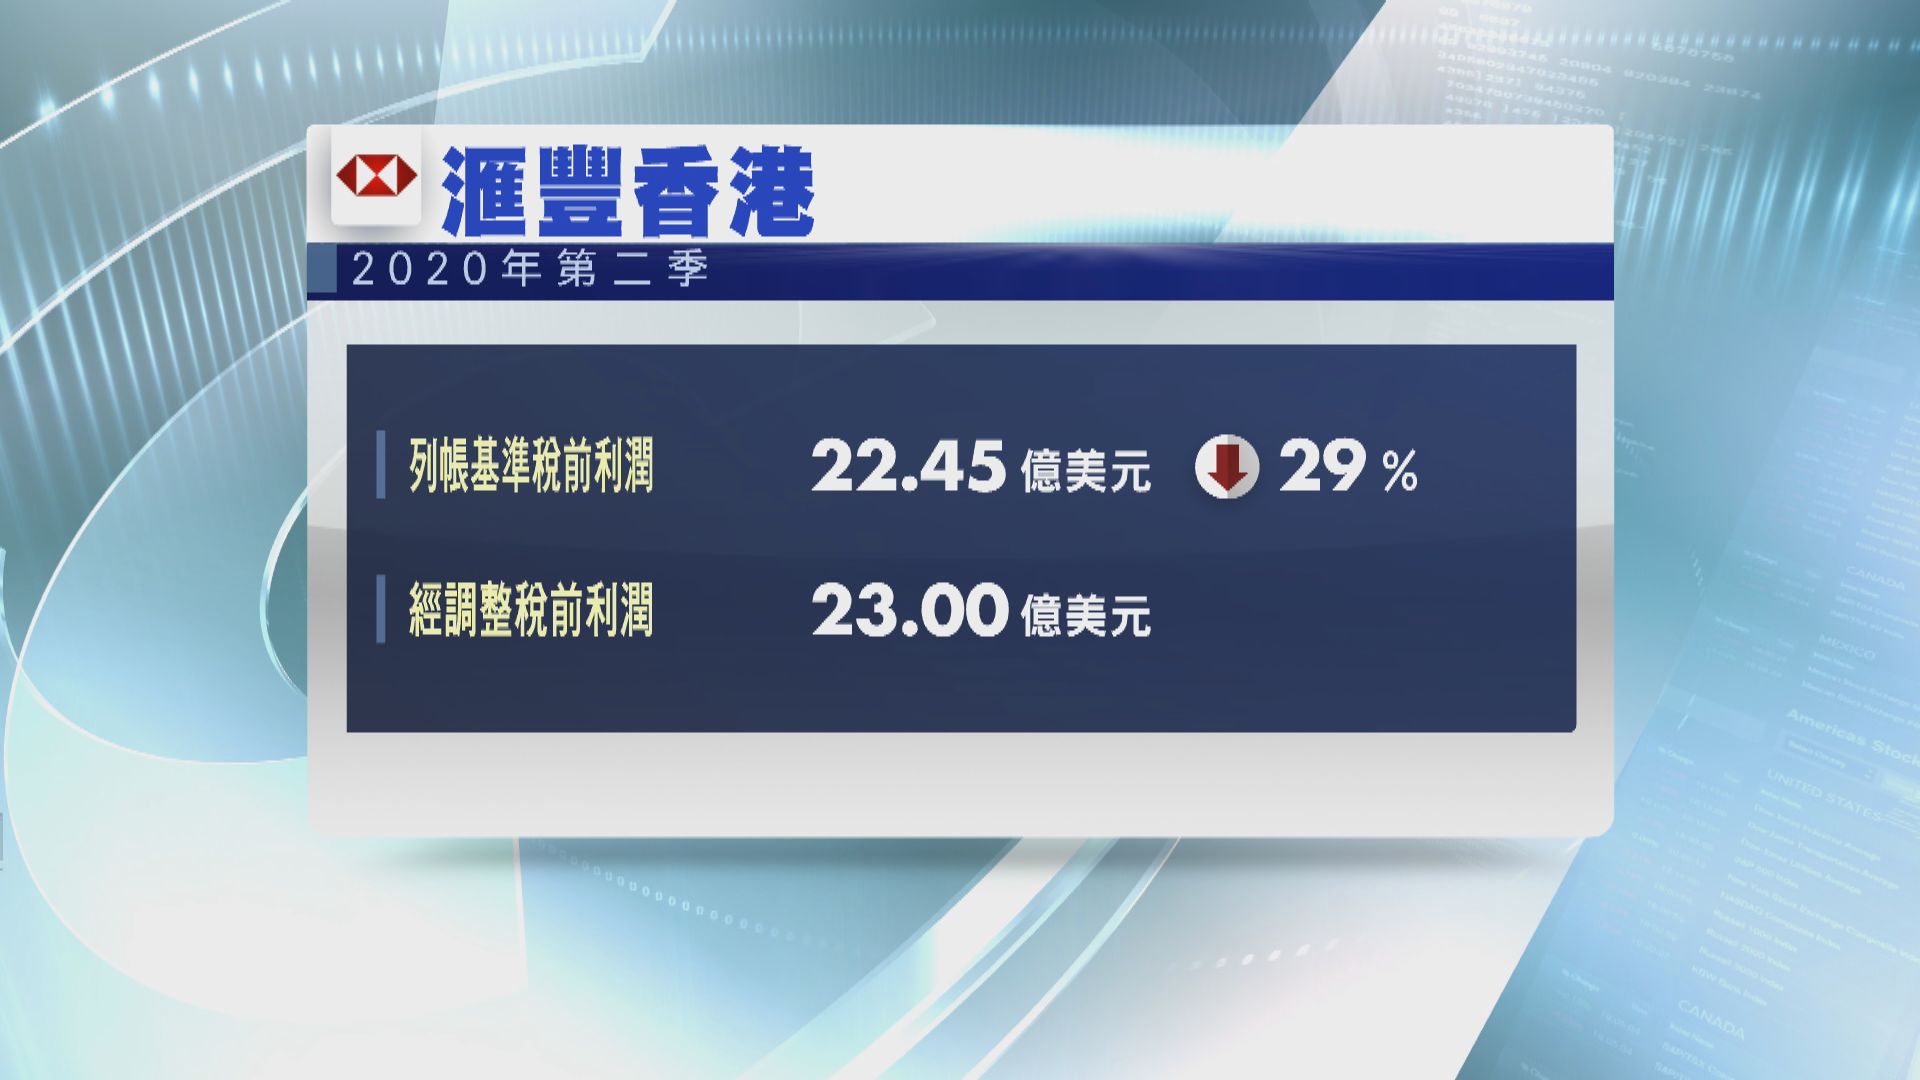 滙豐香港第二季利潤按年下跌兩成九